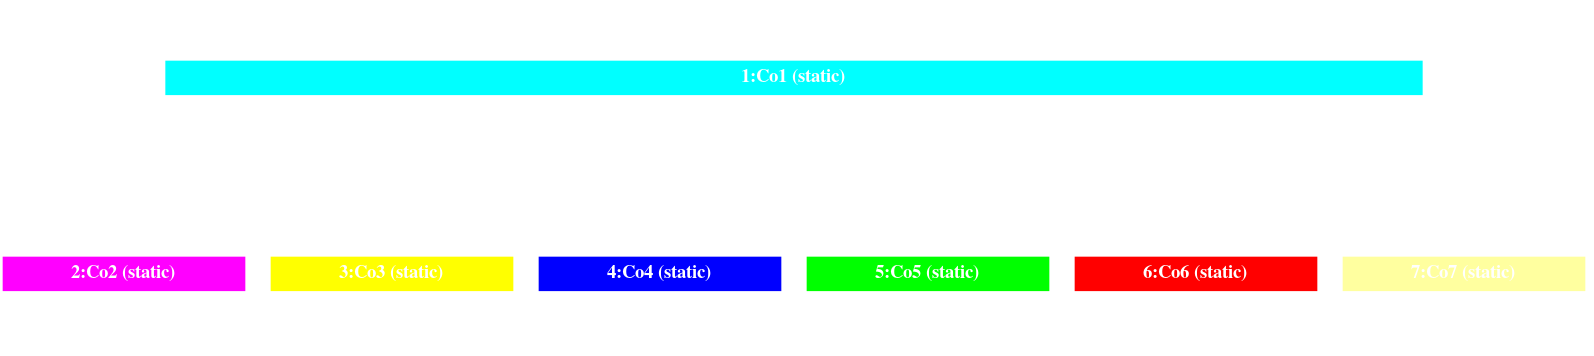 TCAE Pelton distributor turorial component graph